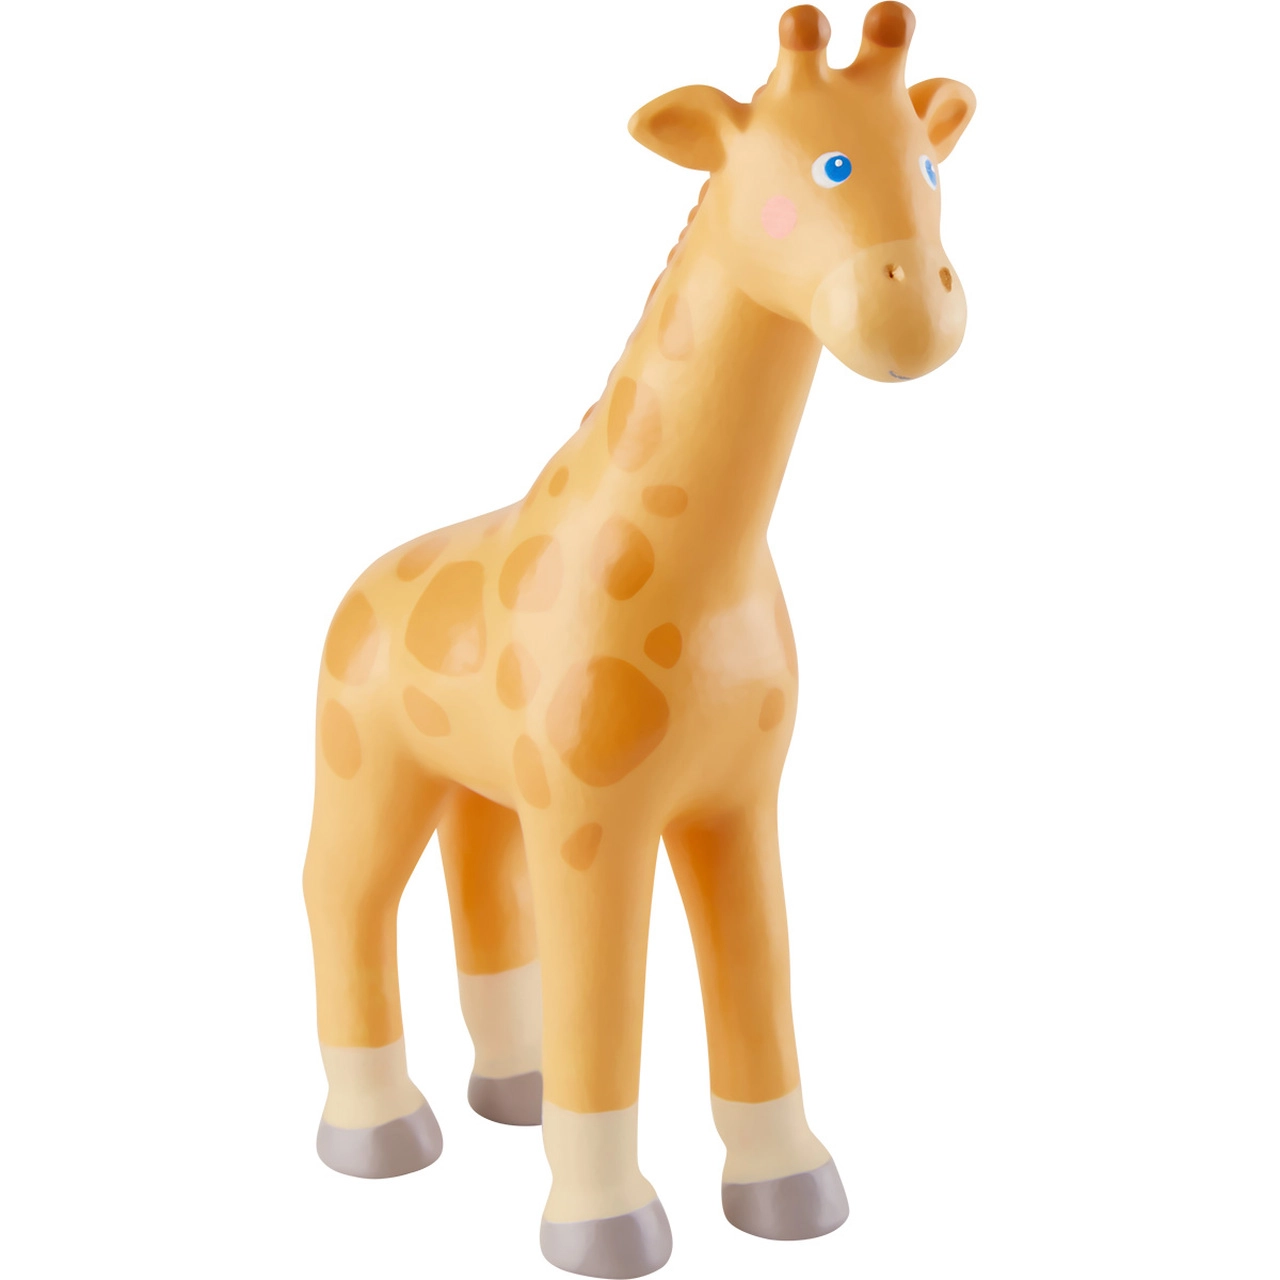 Haba-Little Friends Giraffe-13034-Legacy Toys